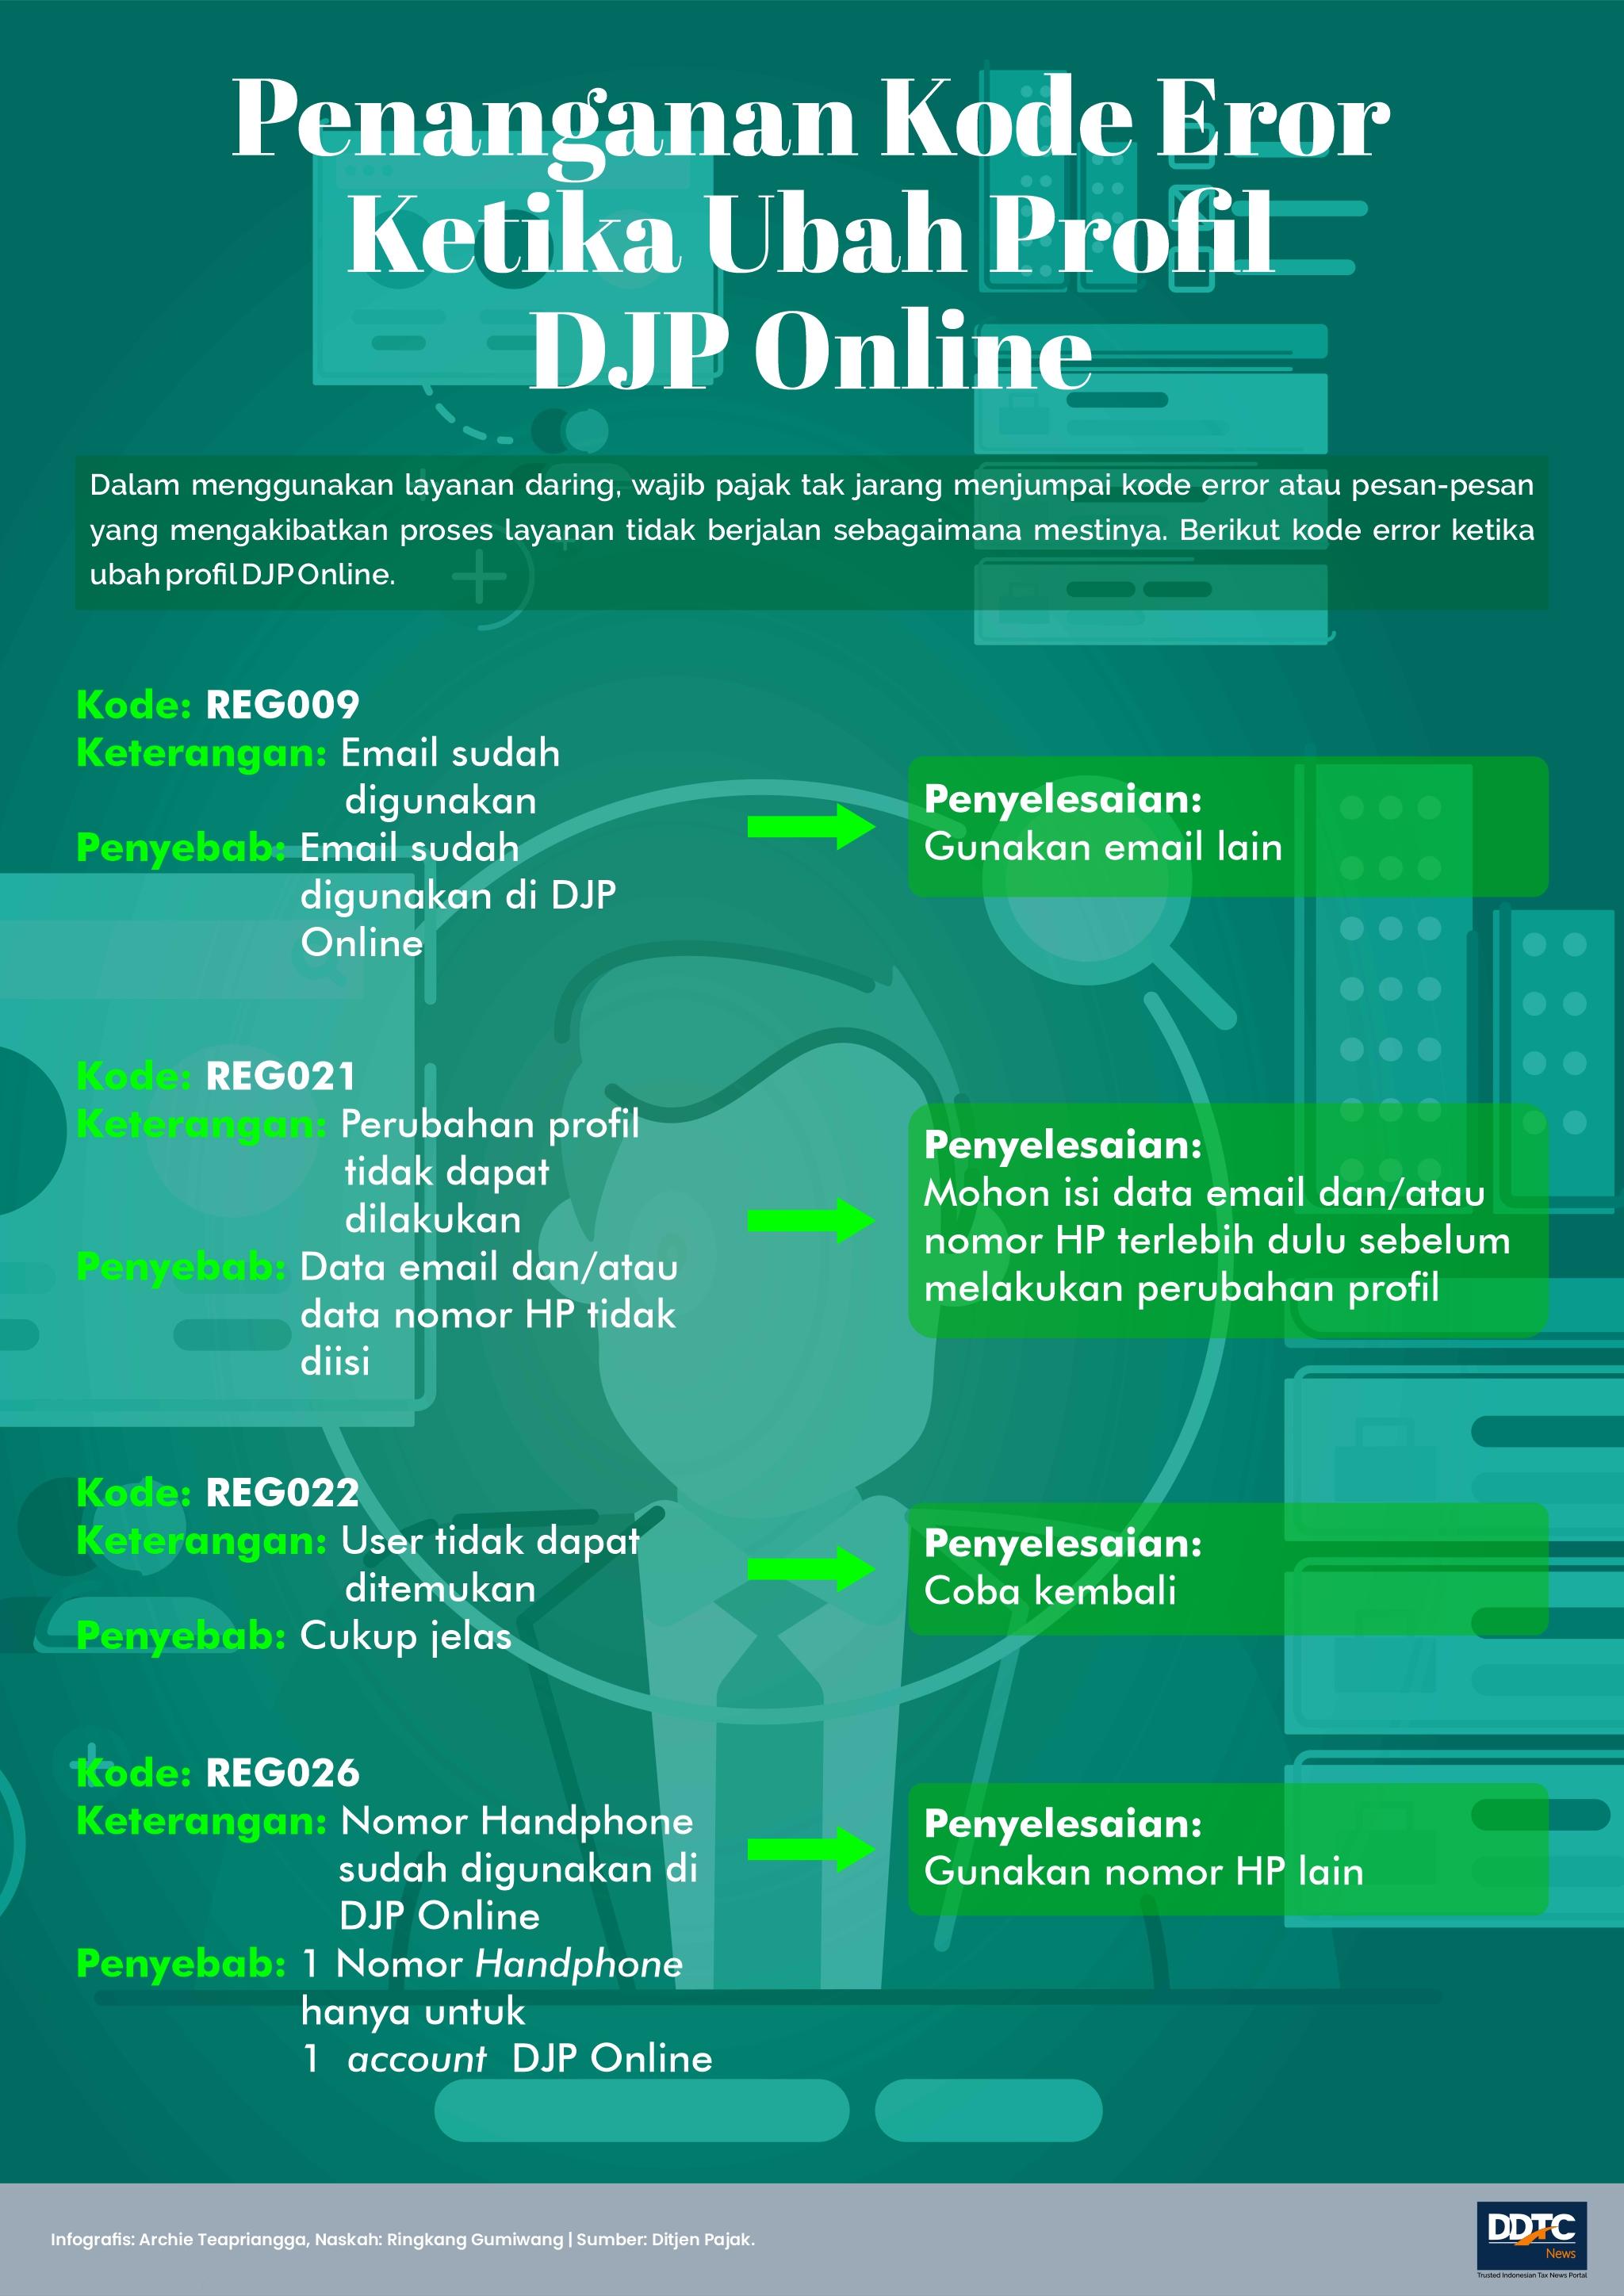 Sederet Kode Eror Saat Ubah Profil DJP Online